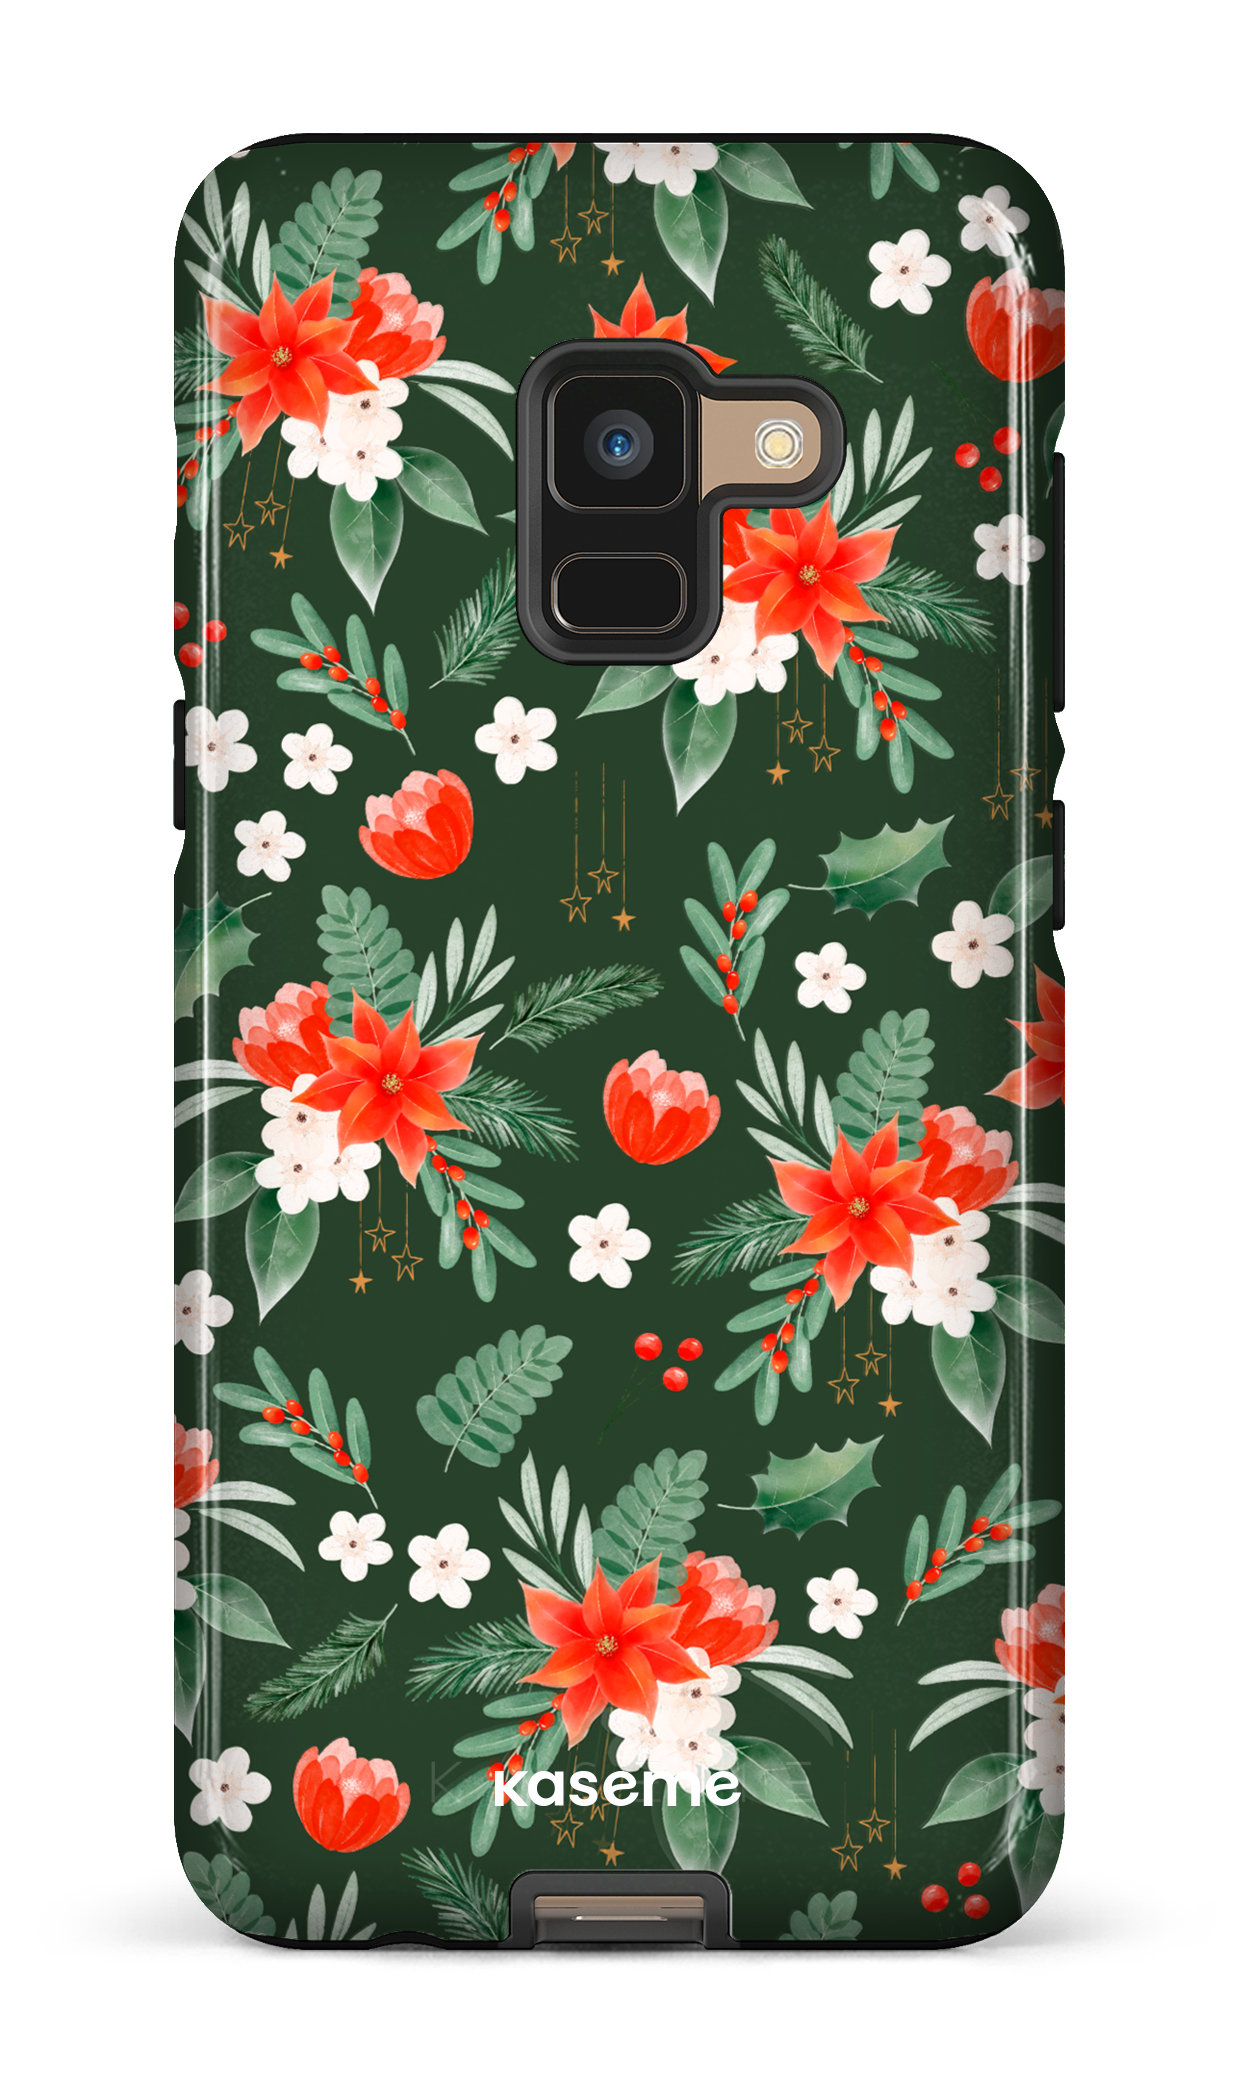 Poinsettia - Galaxy A8